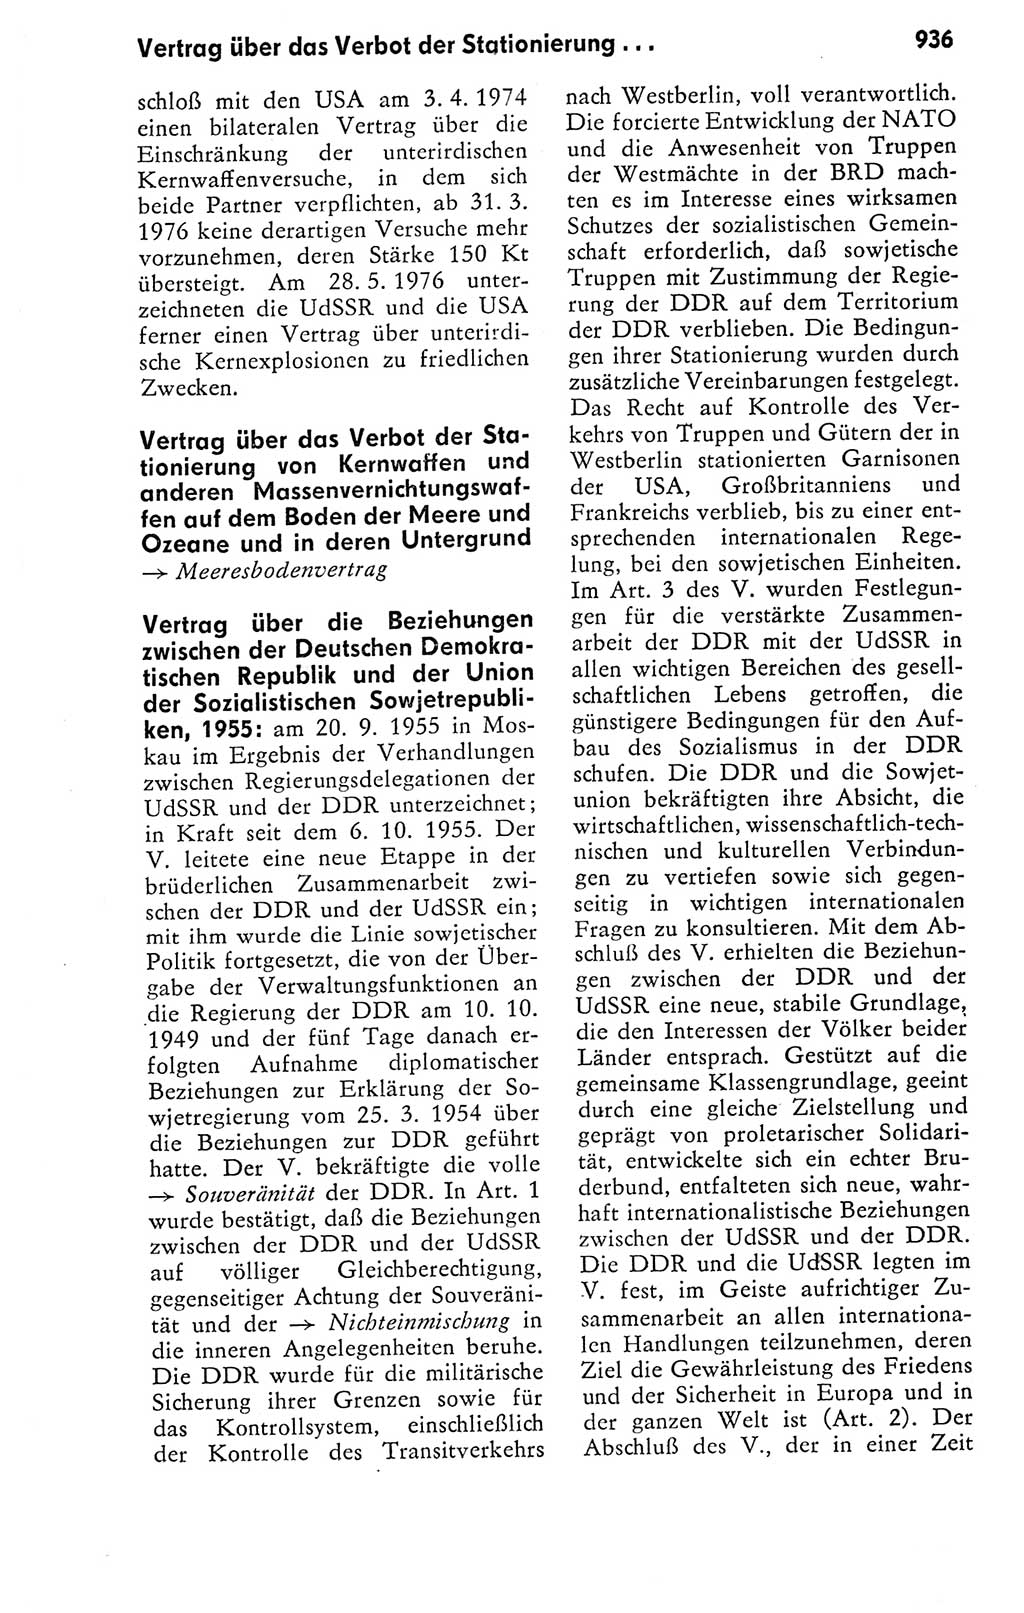 Kleines politisches Wörterbuch [Deutsche Demokratische Republik (DDR)] 1978, Seite 936 (Kl. pol. Wb. DDR 1978, S. 936)